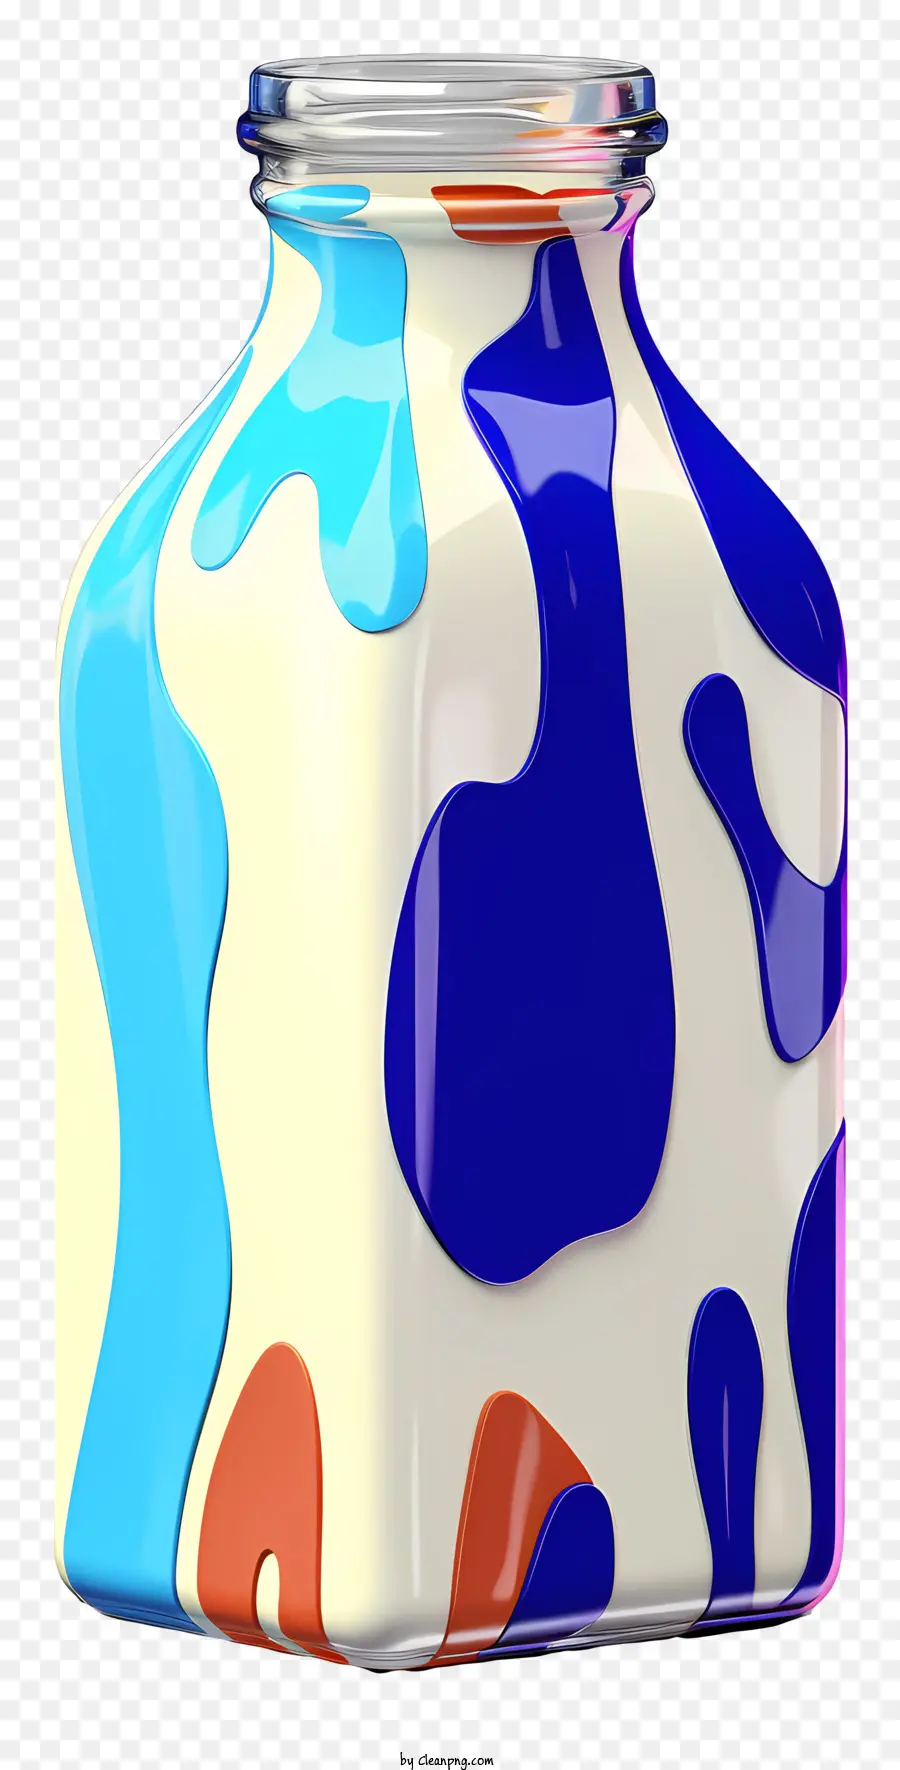 chai nhựa - Chai sữa đầy màu sắc với nhãn 